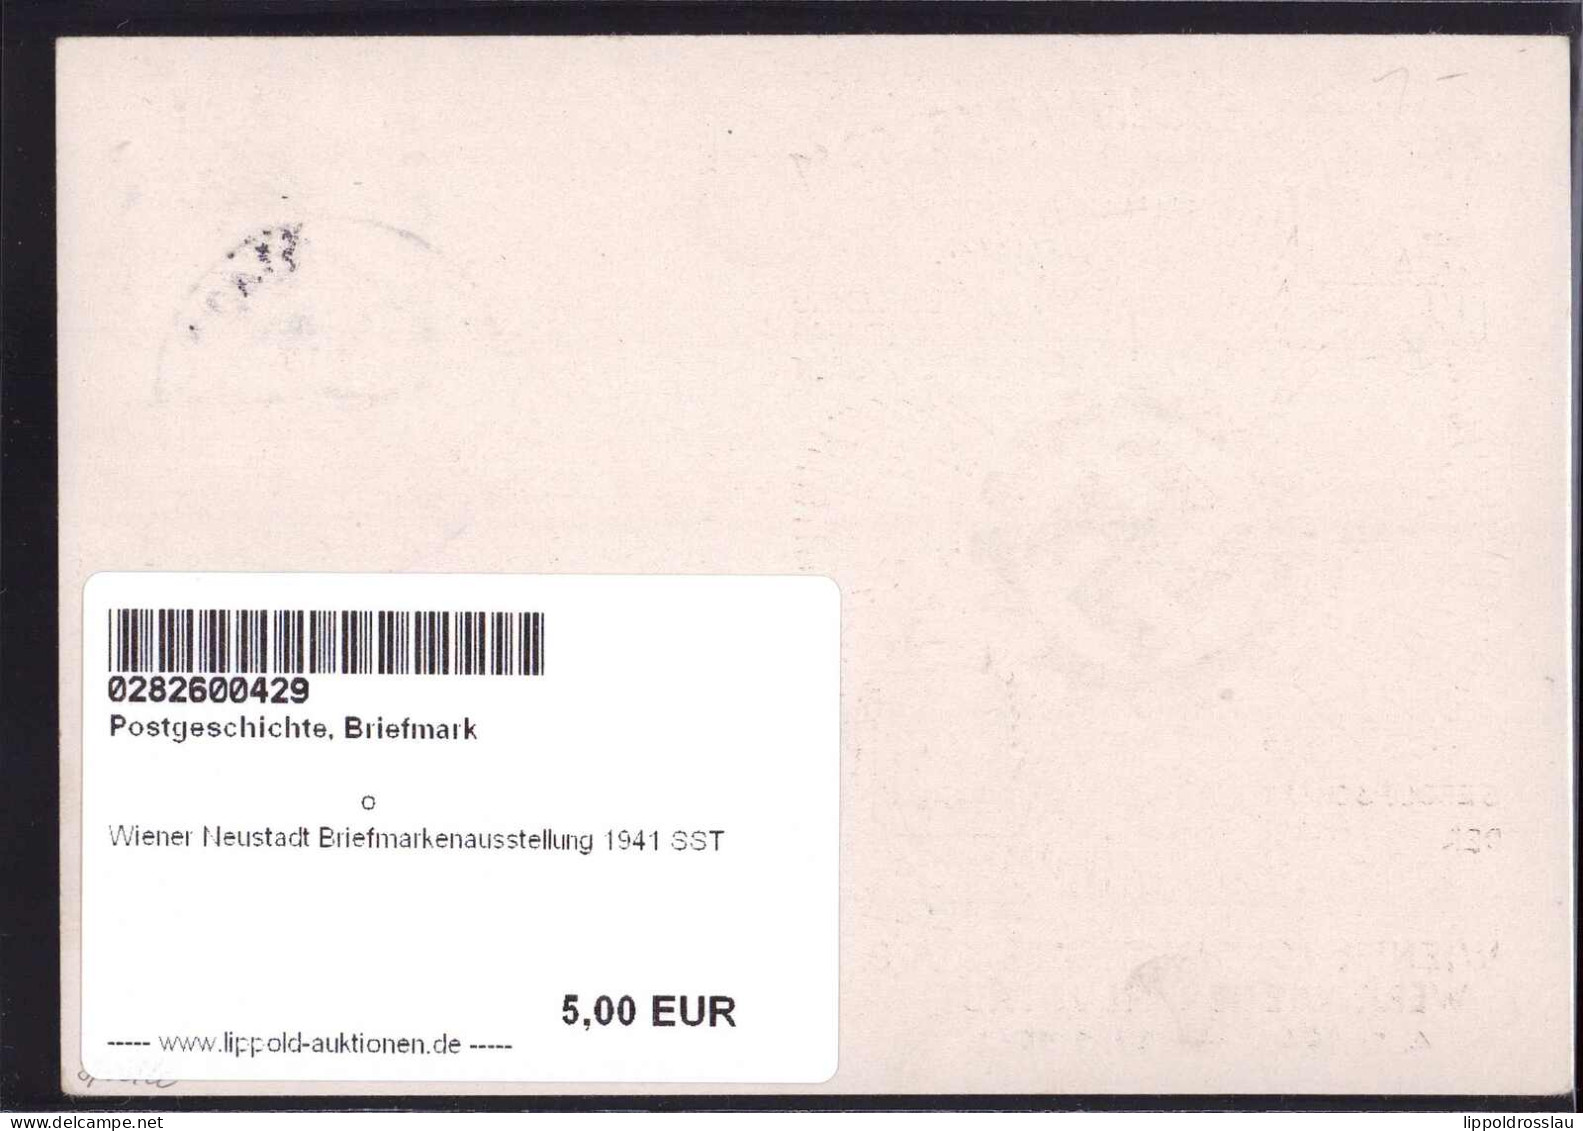 Gest. Wiener Neustadt Briefmarkenausstellung 1941 SST - Stamps (pictures)